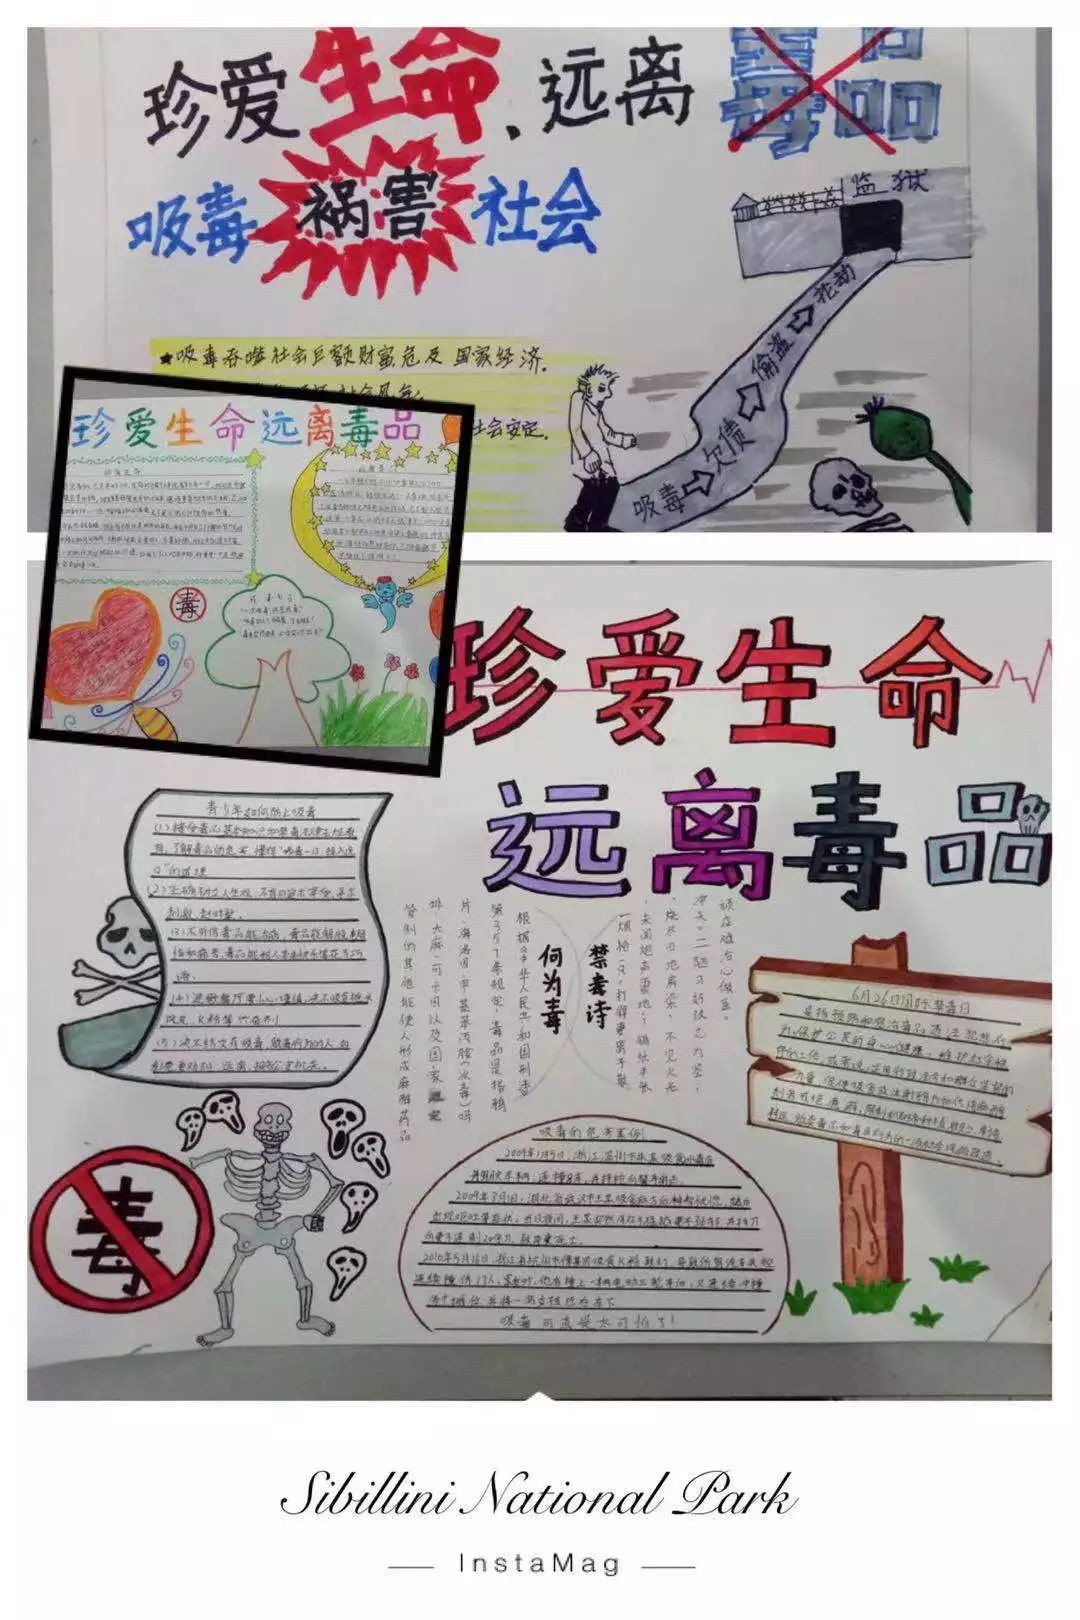 1月3日,三四五年级师生开展"珍爱生命 远离毒品"禁毒主题手抄报展示